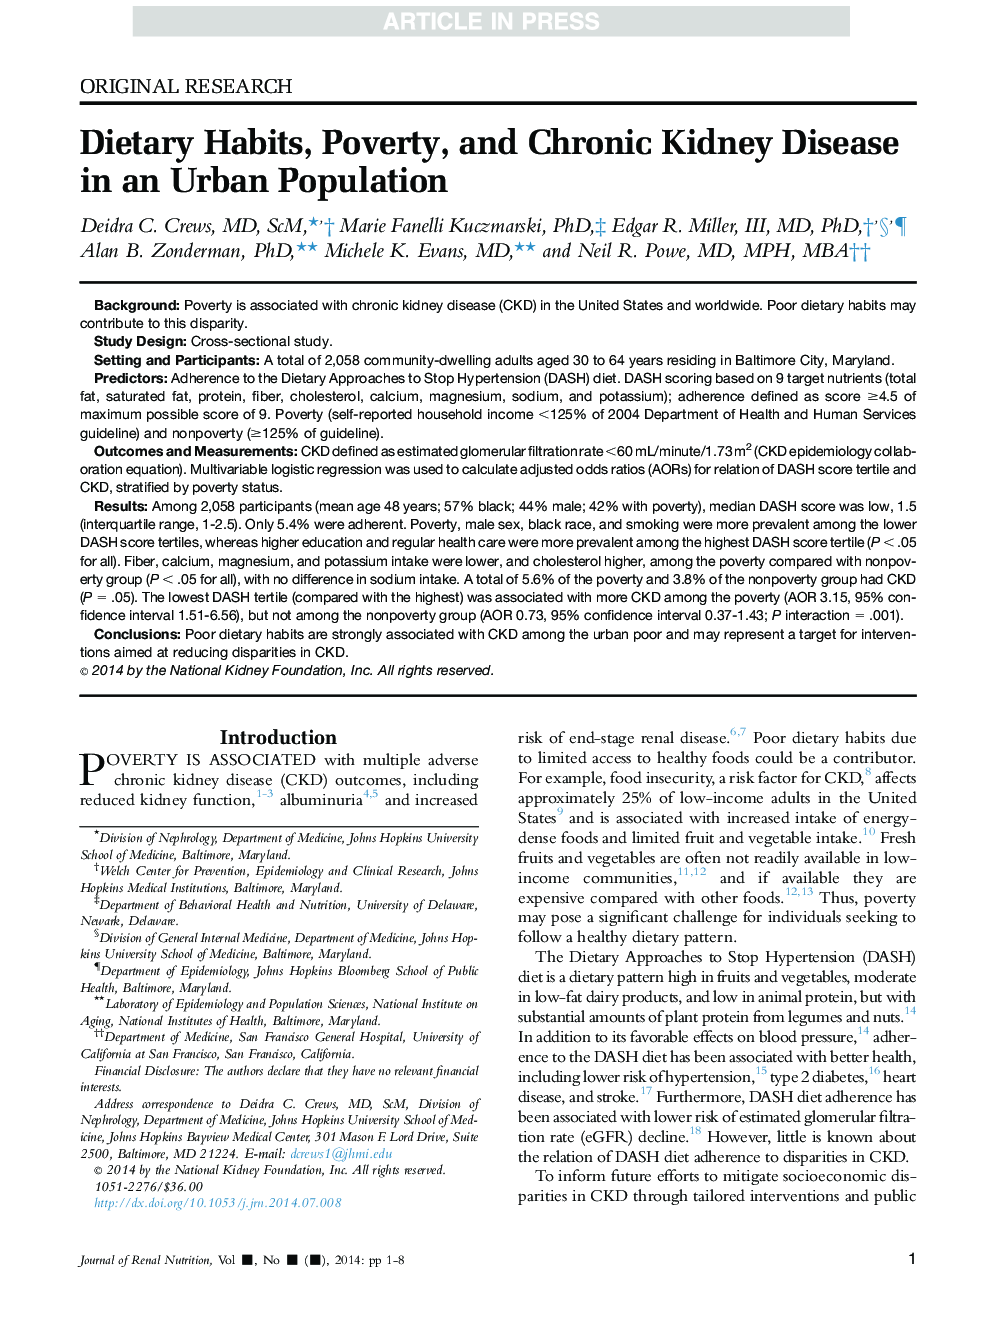 عادت های غذایی، فقر و بیماری مزمن کلیه در جمعیت شهری 